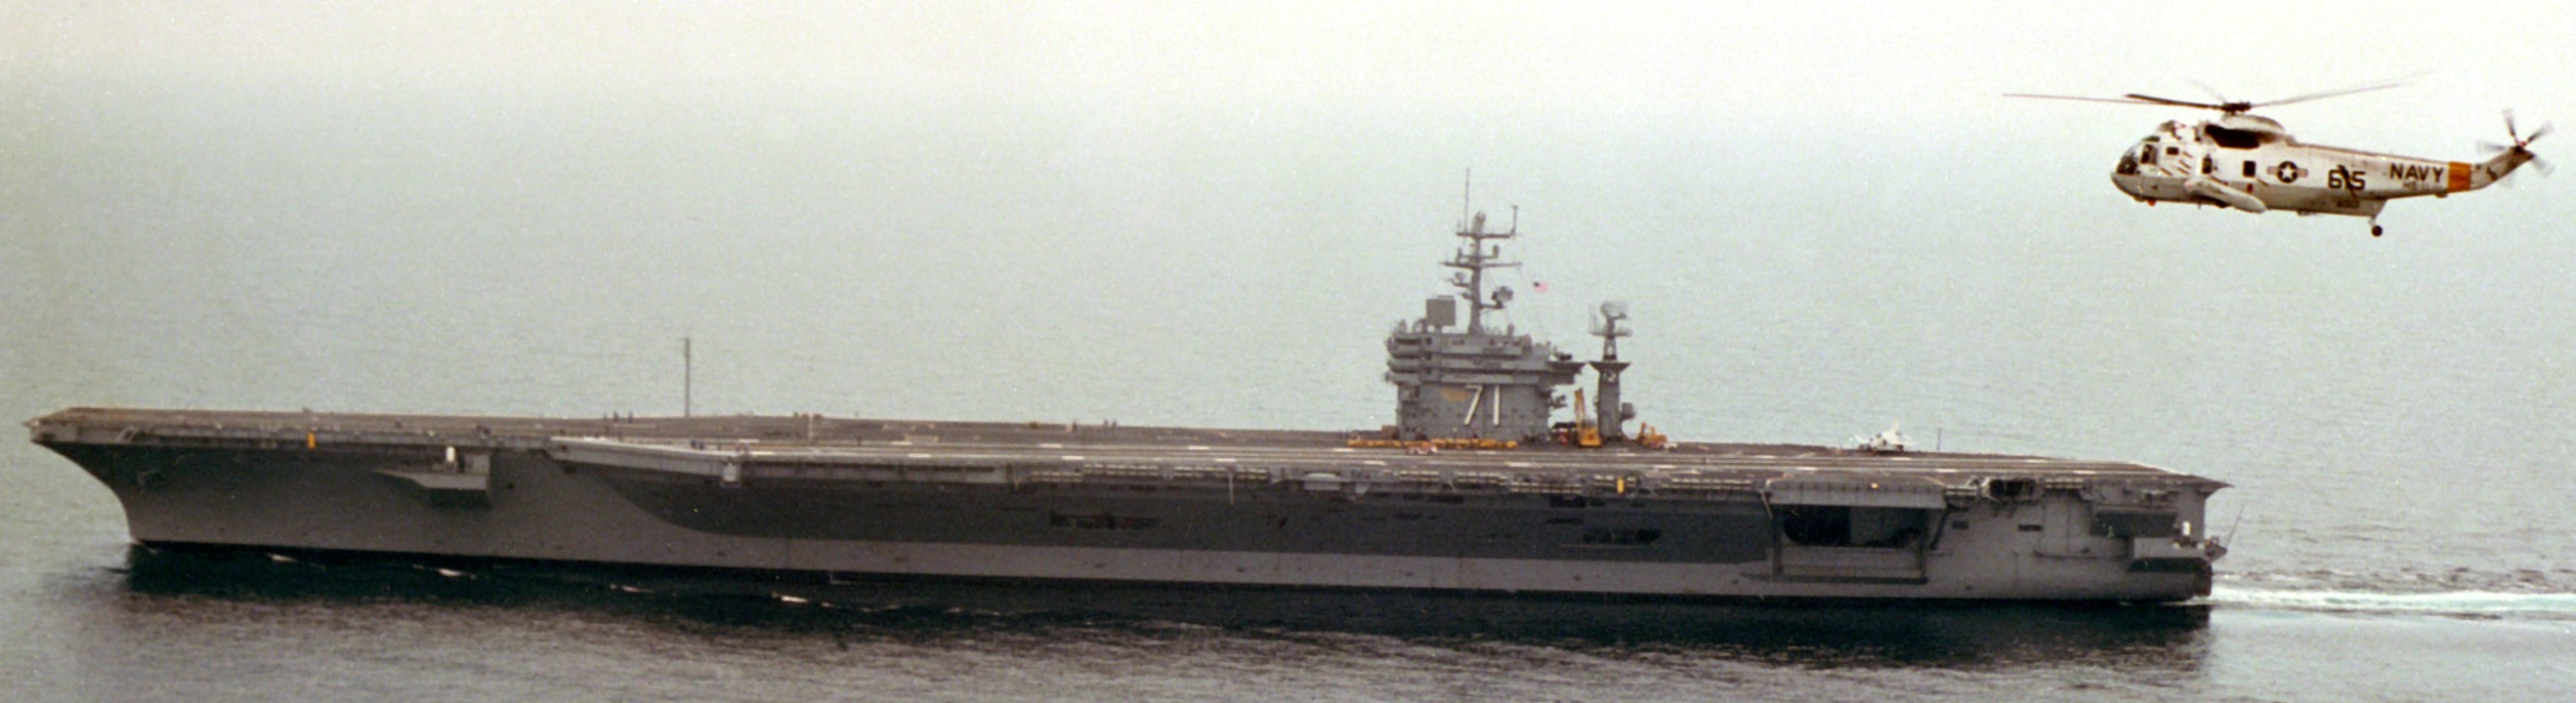 cvn-71 uss theodore roosevelt nimitz class aircraft carrier 34